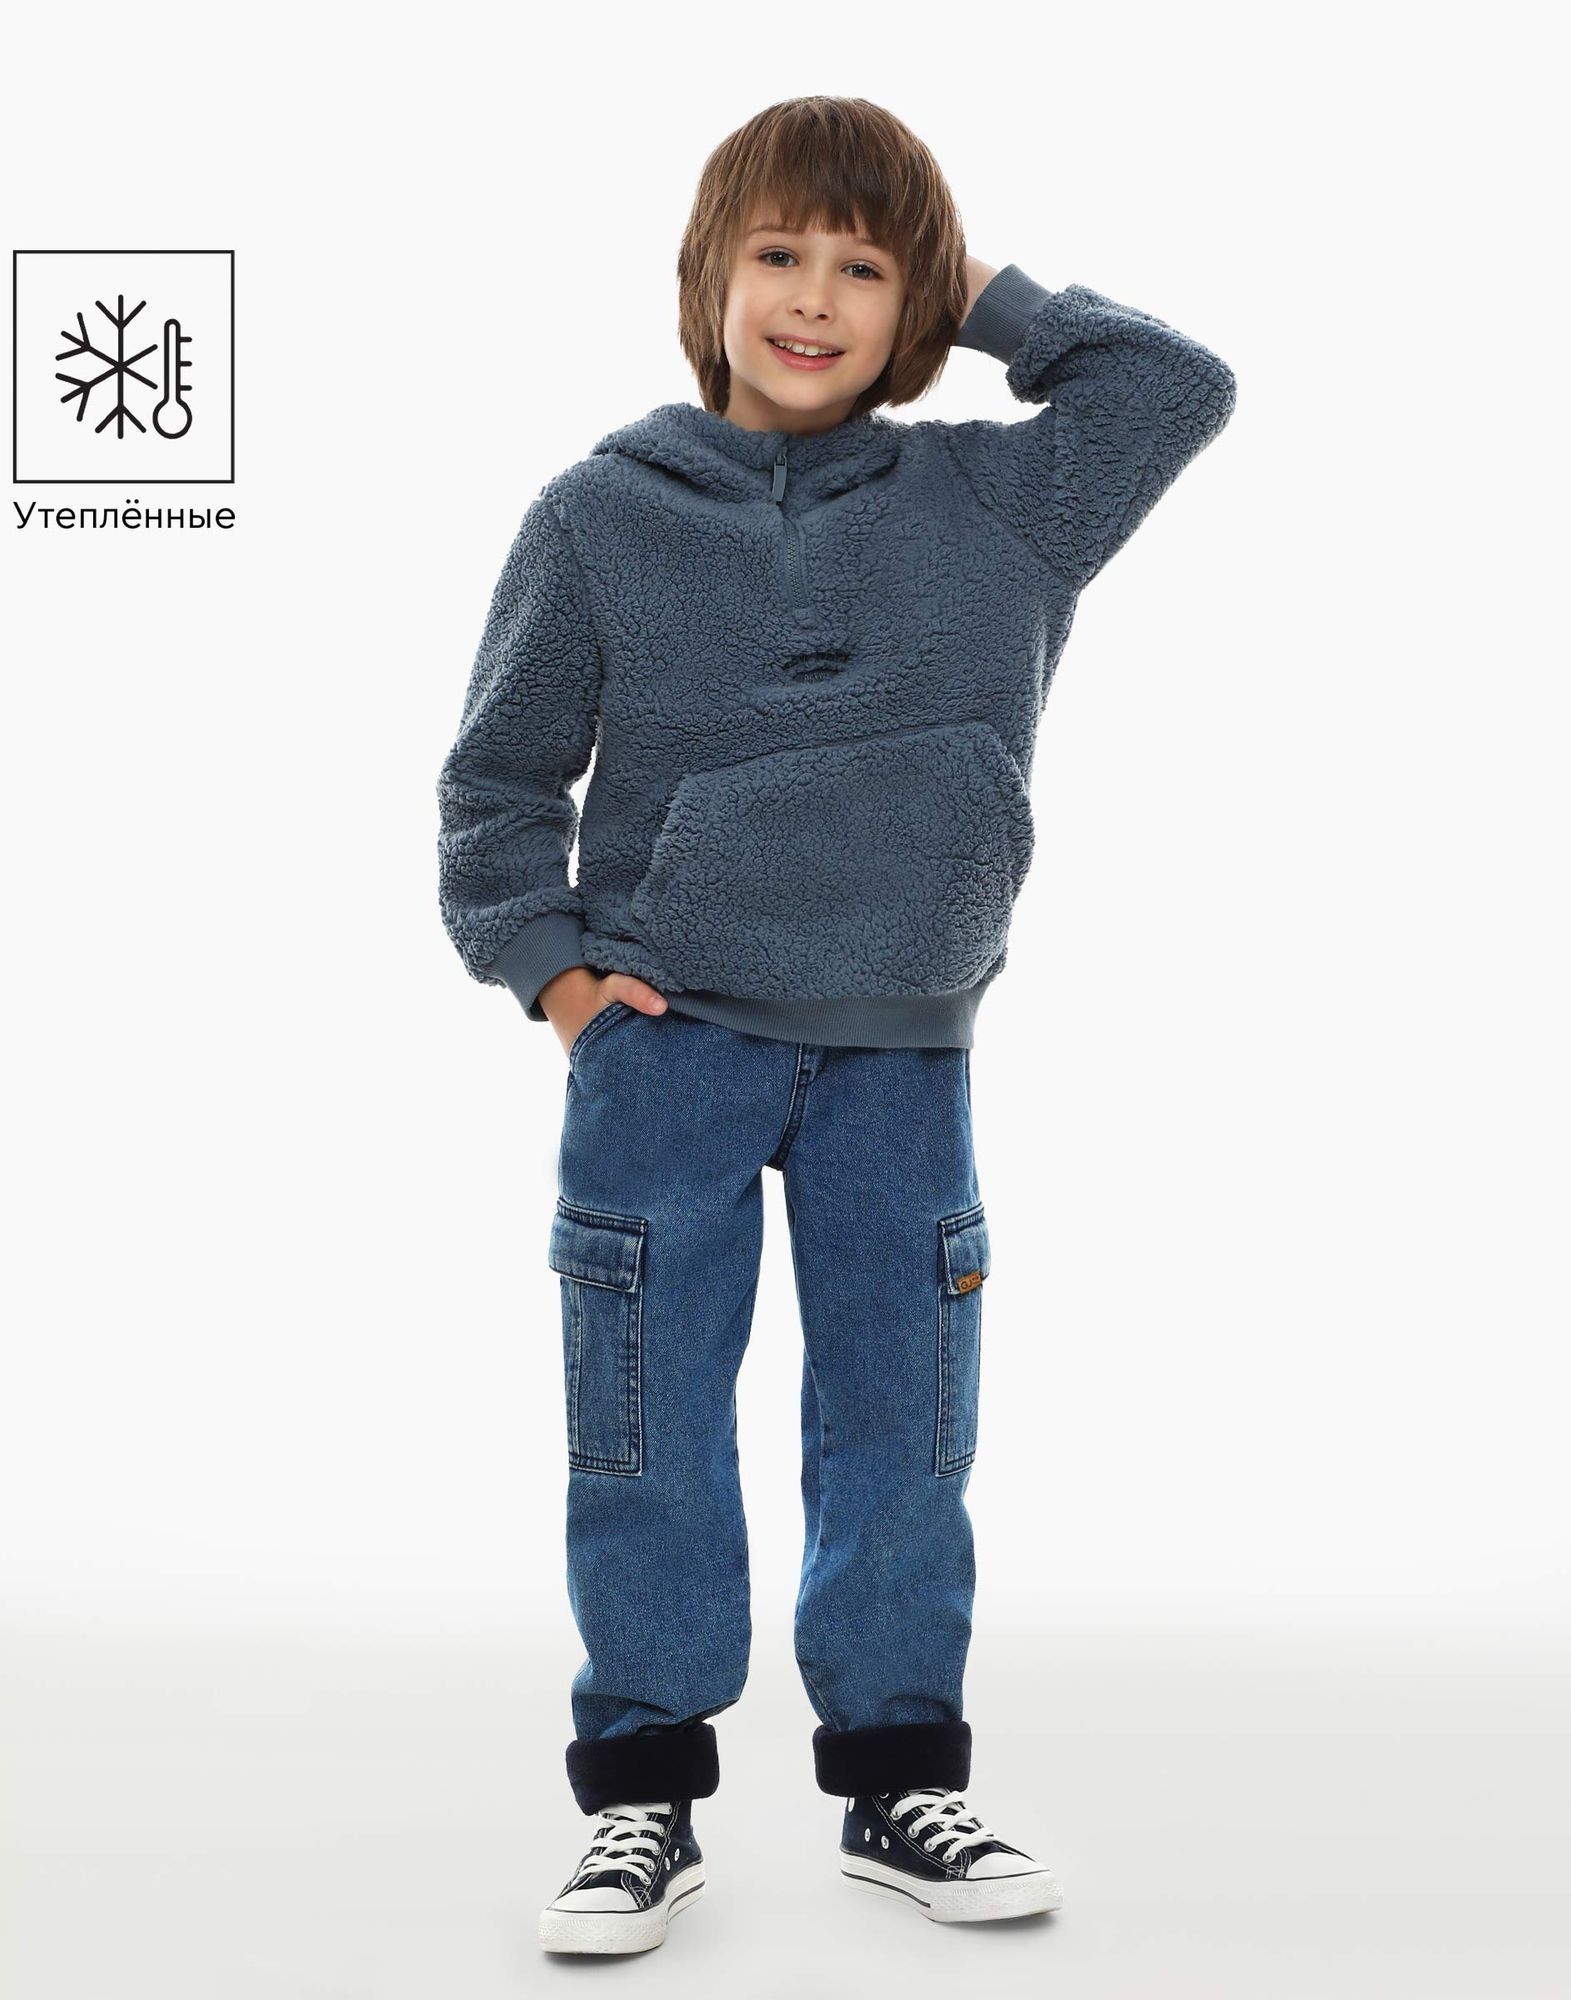 Утеплённые джинсы Cargo для мальчика-0